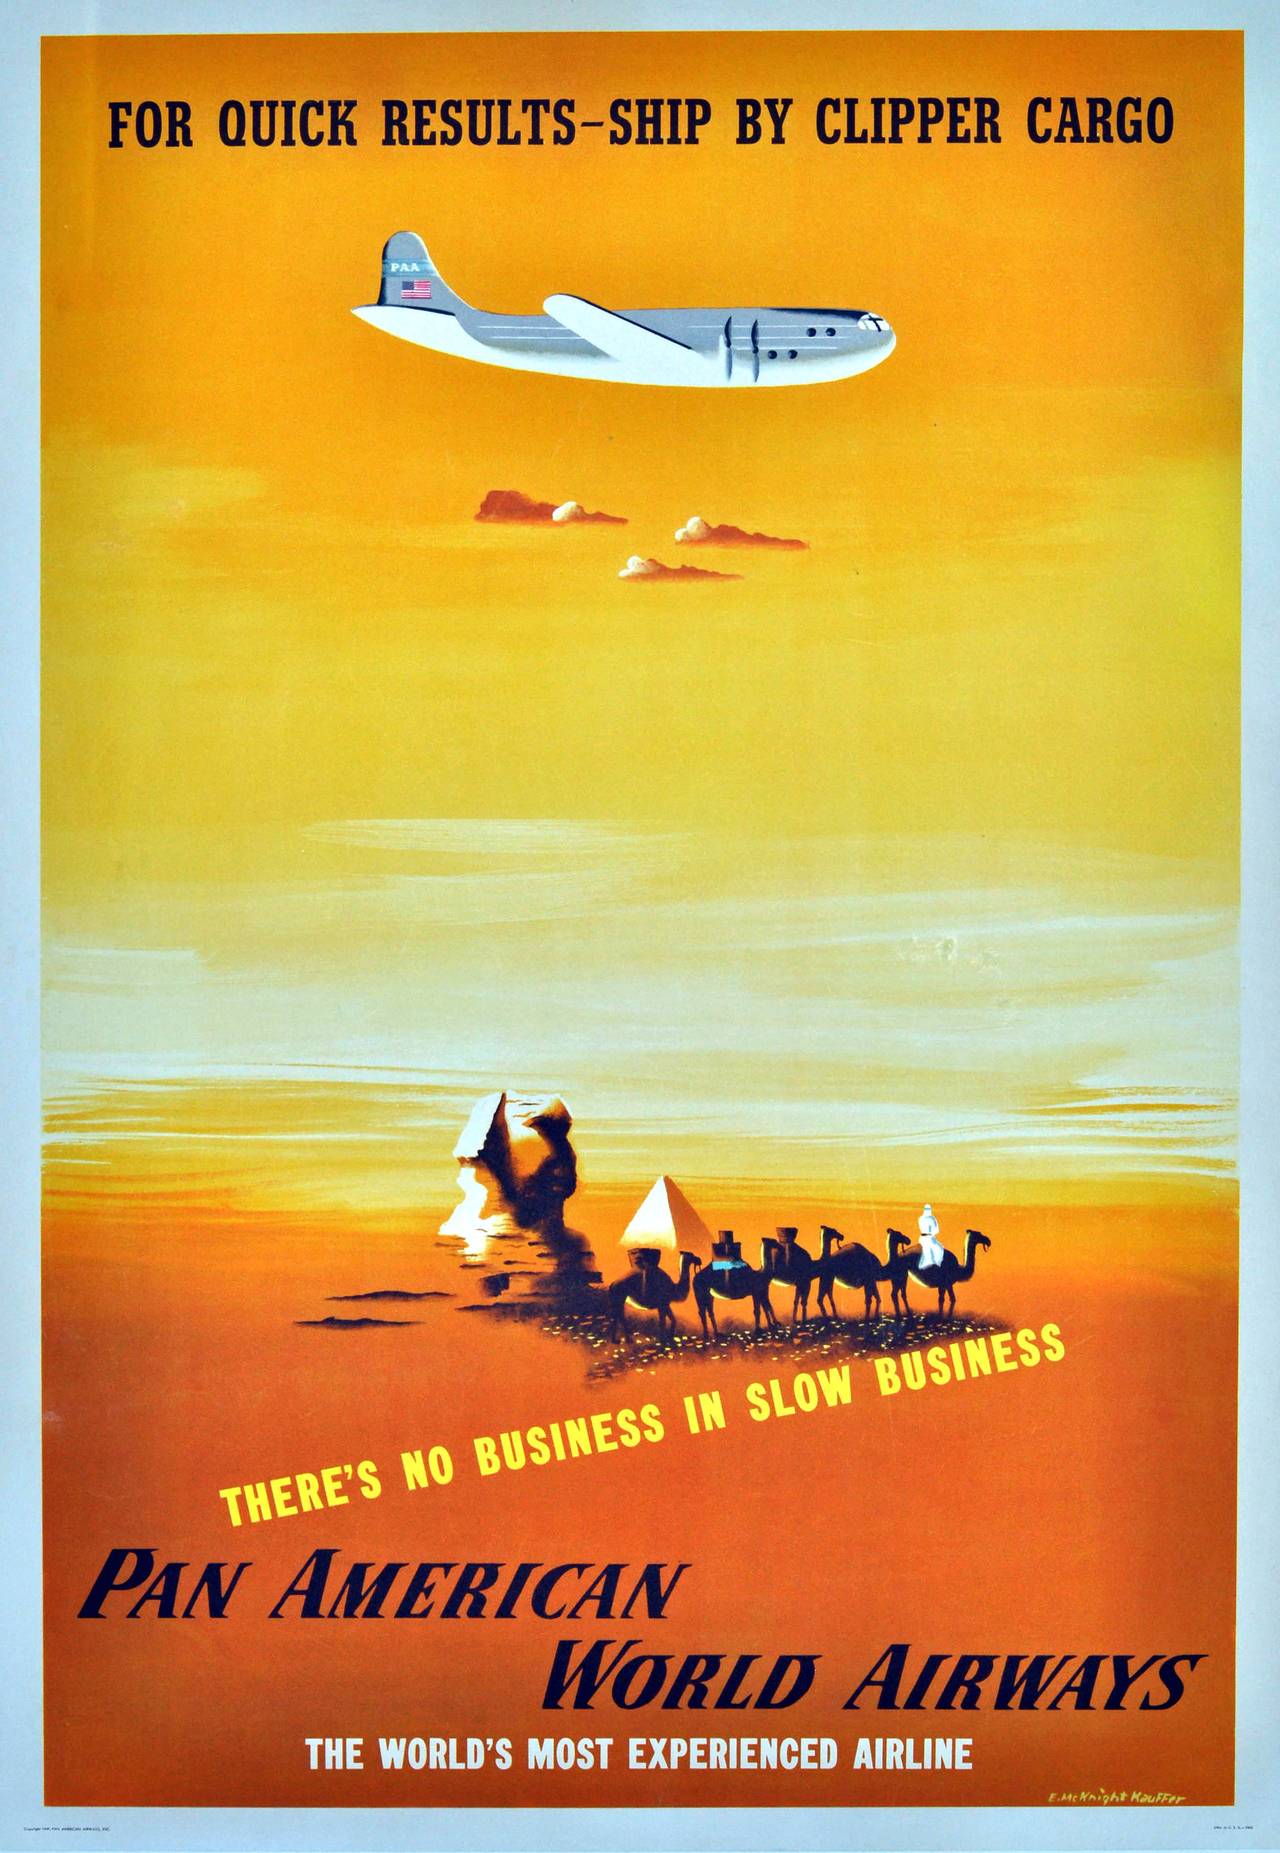 Edward McKnight Kauffer Print - Original Pan Am Advertising Poster By E. McKnight Kauffer: Ship By Clipper Cargo